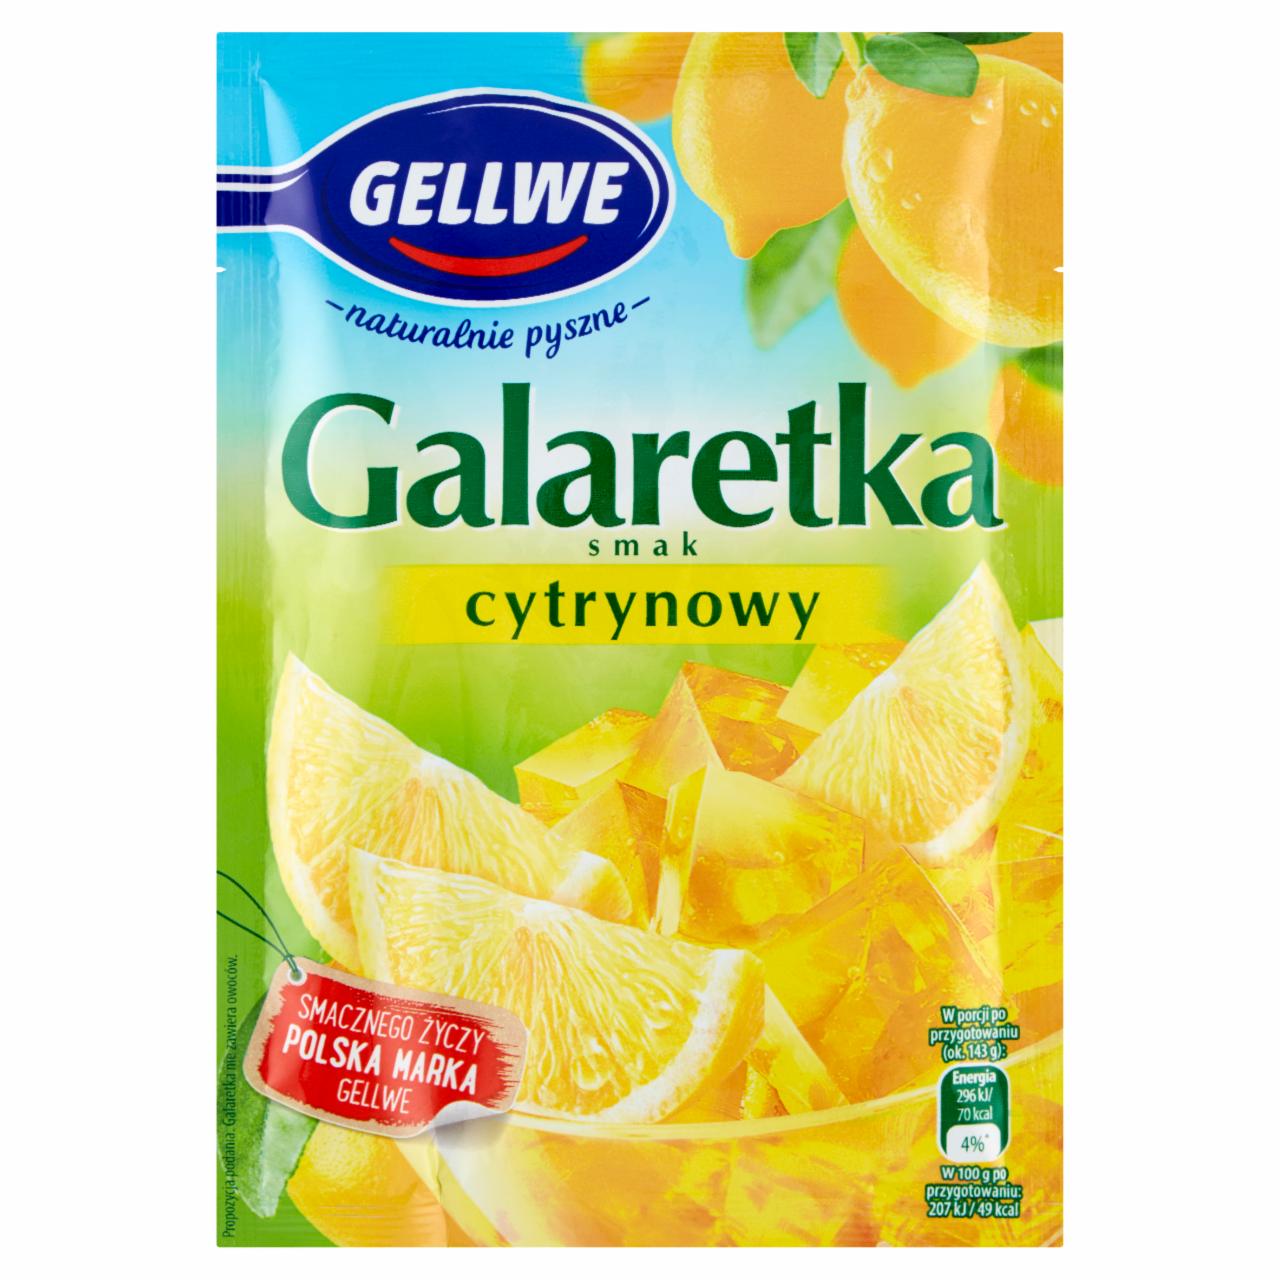 Zdjęcia - Gellwe Galaretka smak cytrynowy 72 g